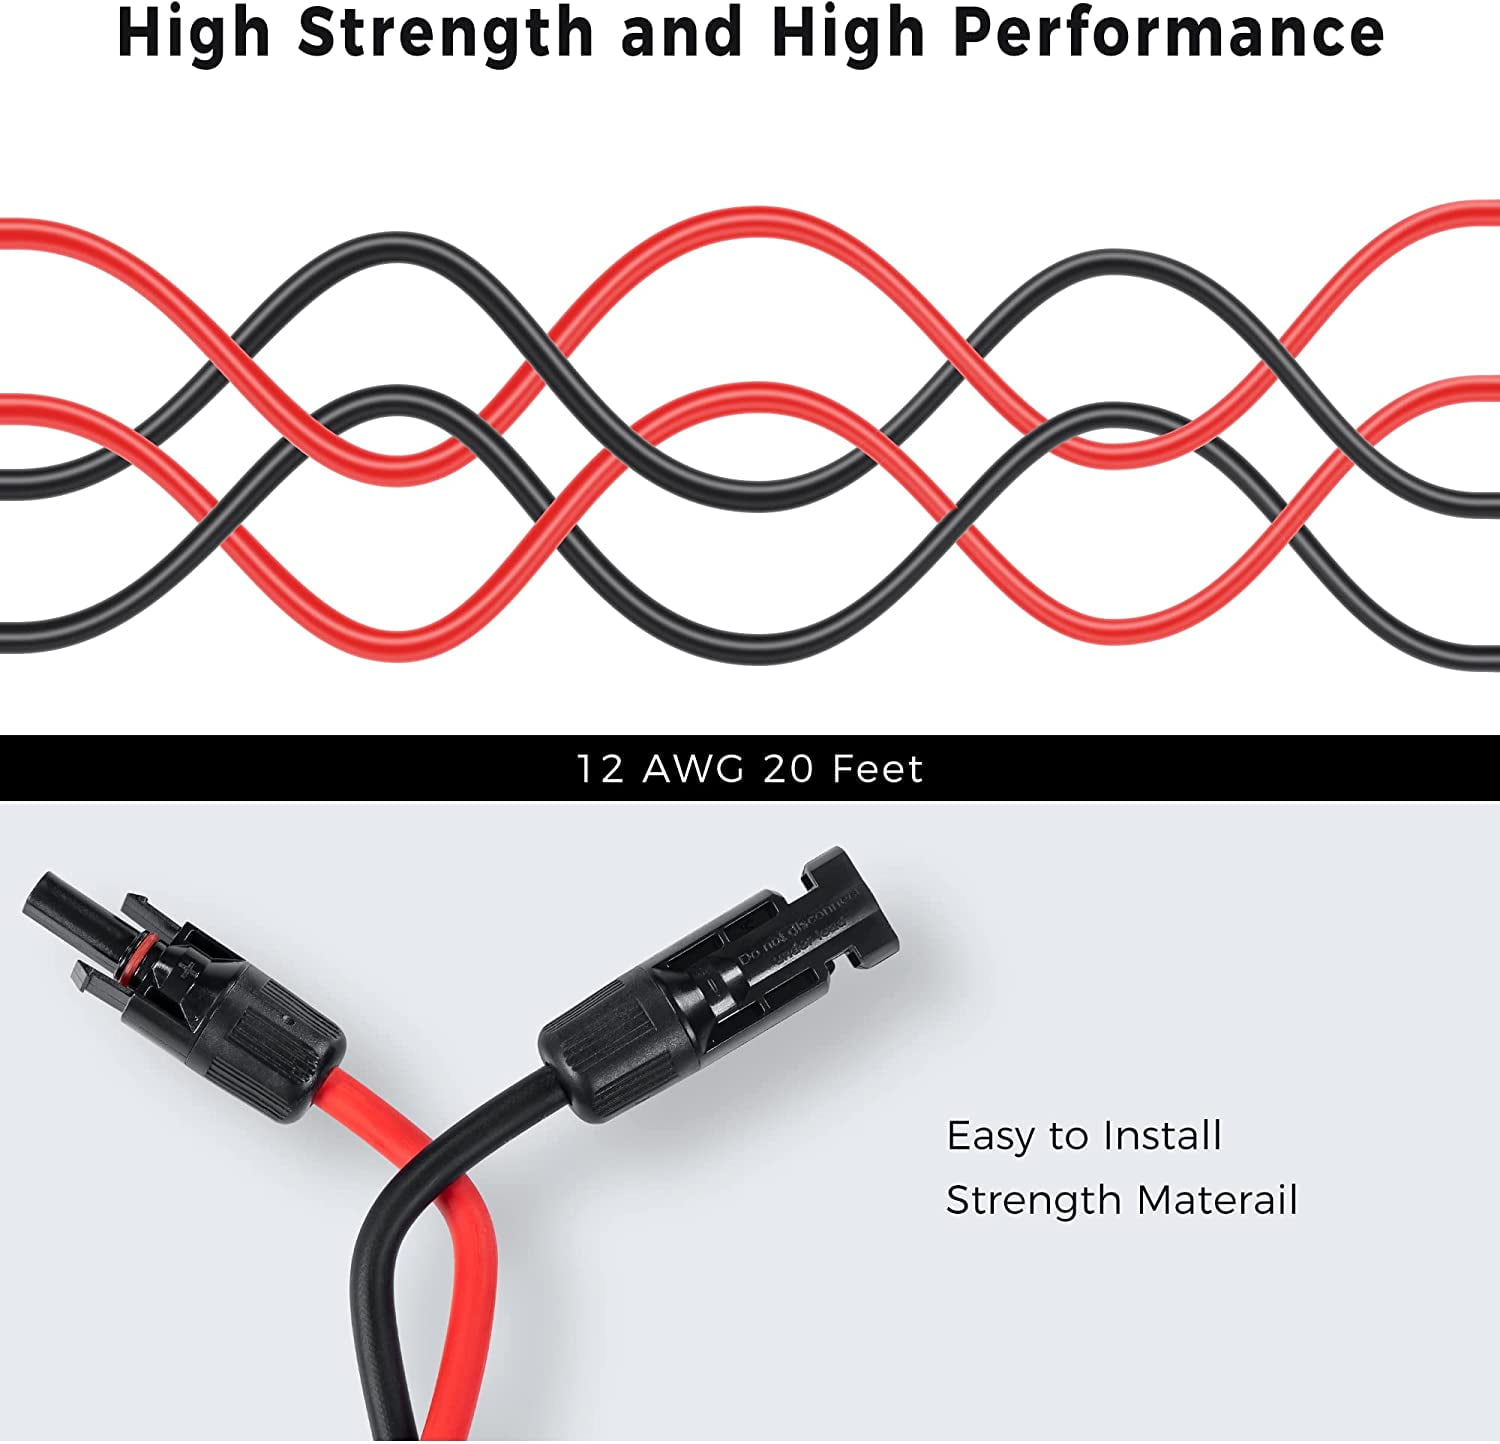 STÄUBLI 2m MC4 extension cable, APS compatible